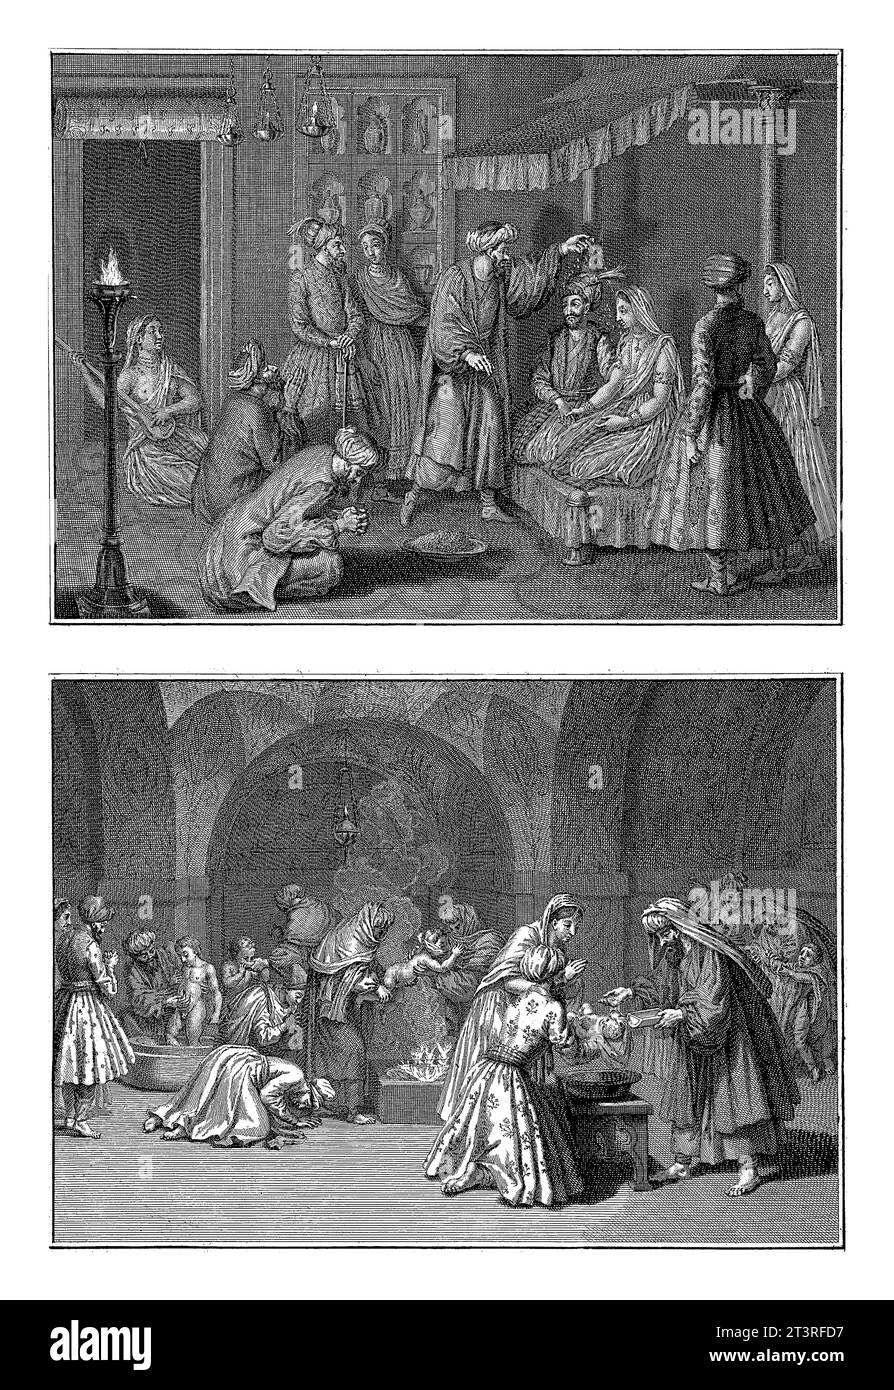 Cérémonie de mariage perse et cérémonie de baptême, Bernard Picart (atelier de), d'après Bernard Picart, 1728 Banque D'Images